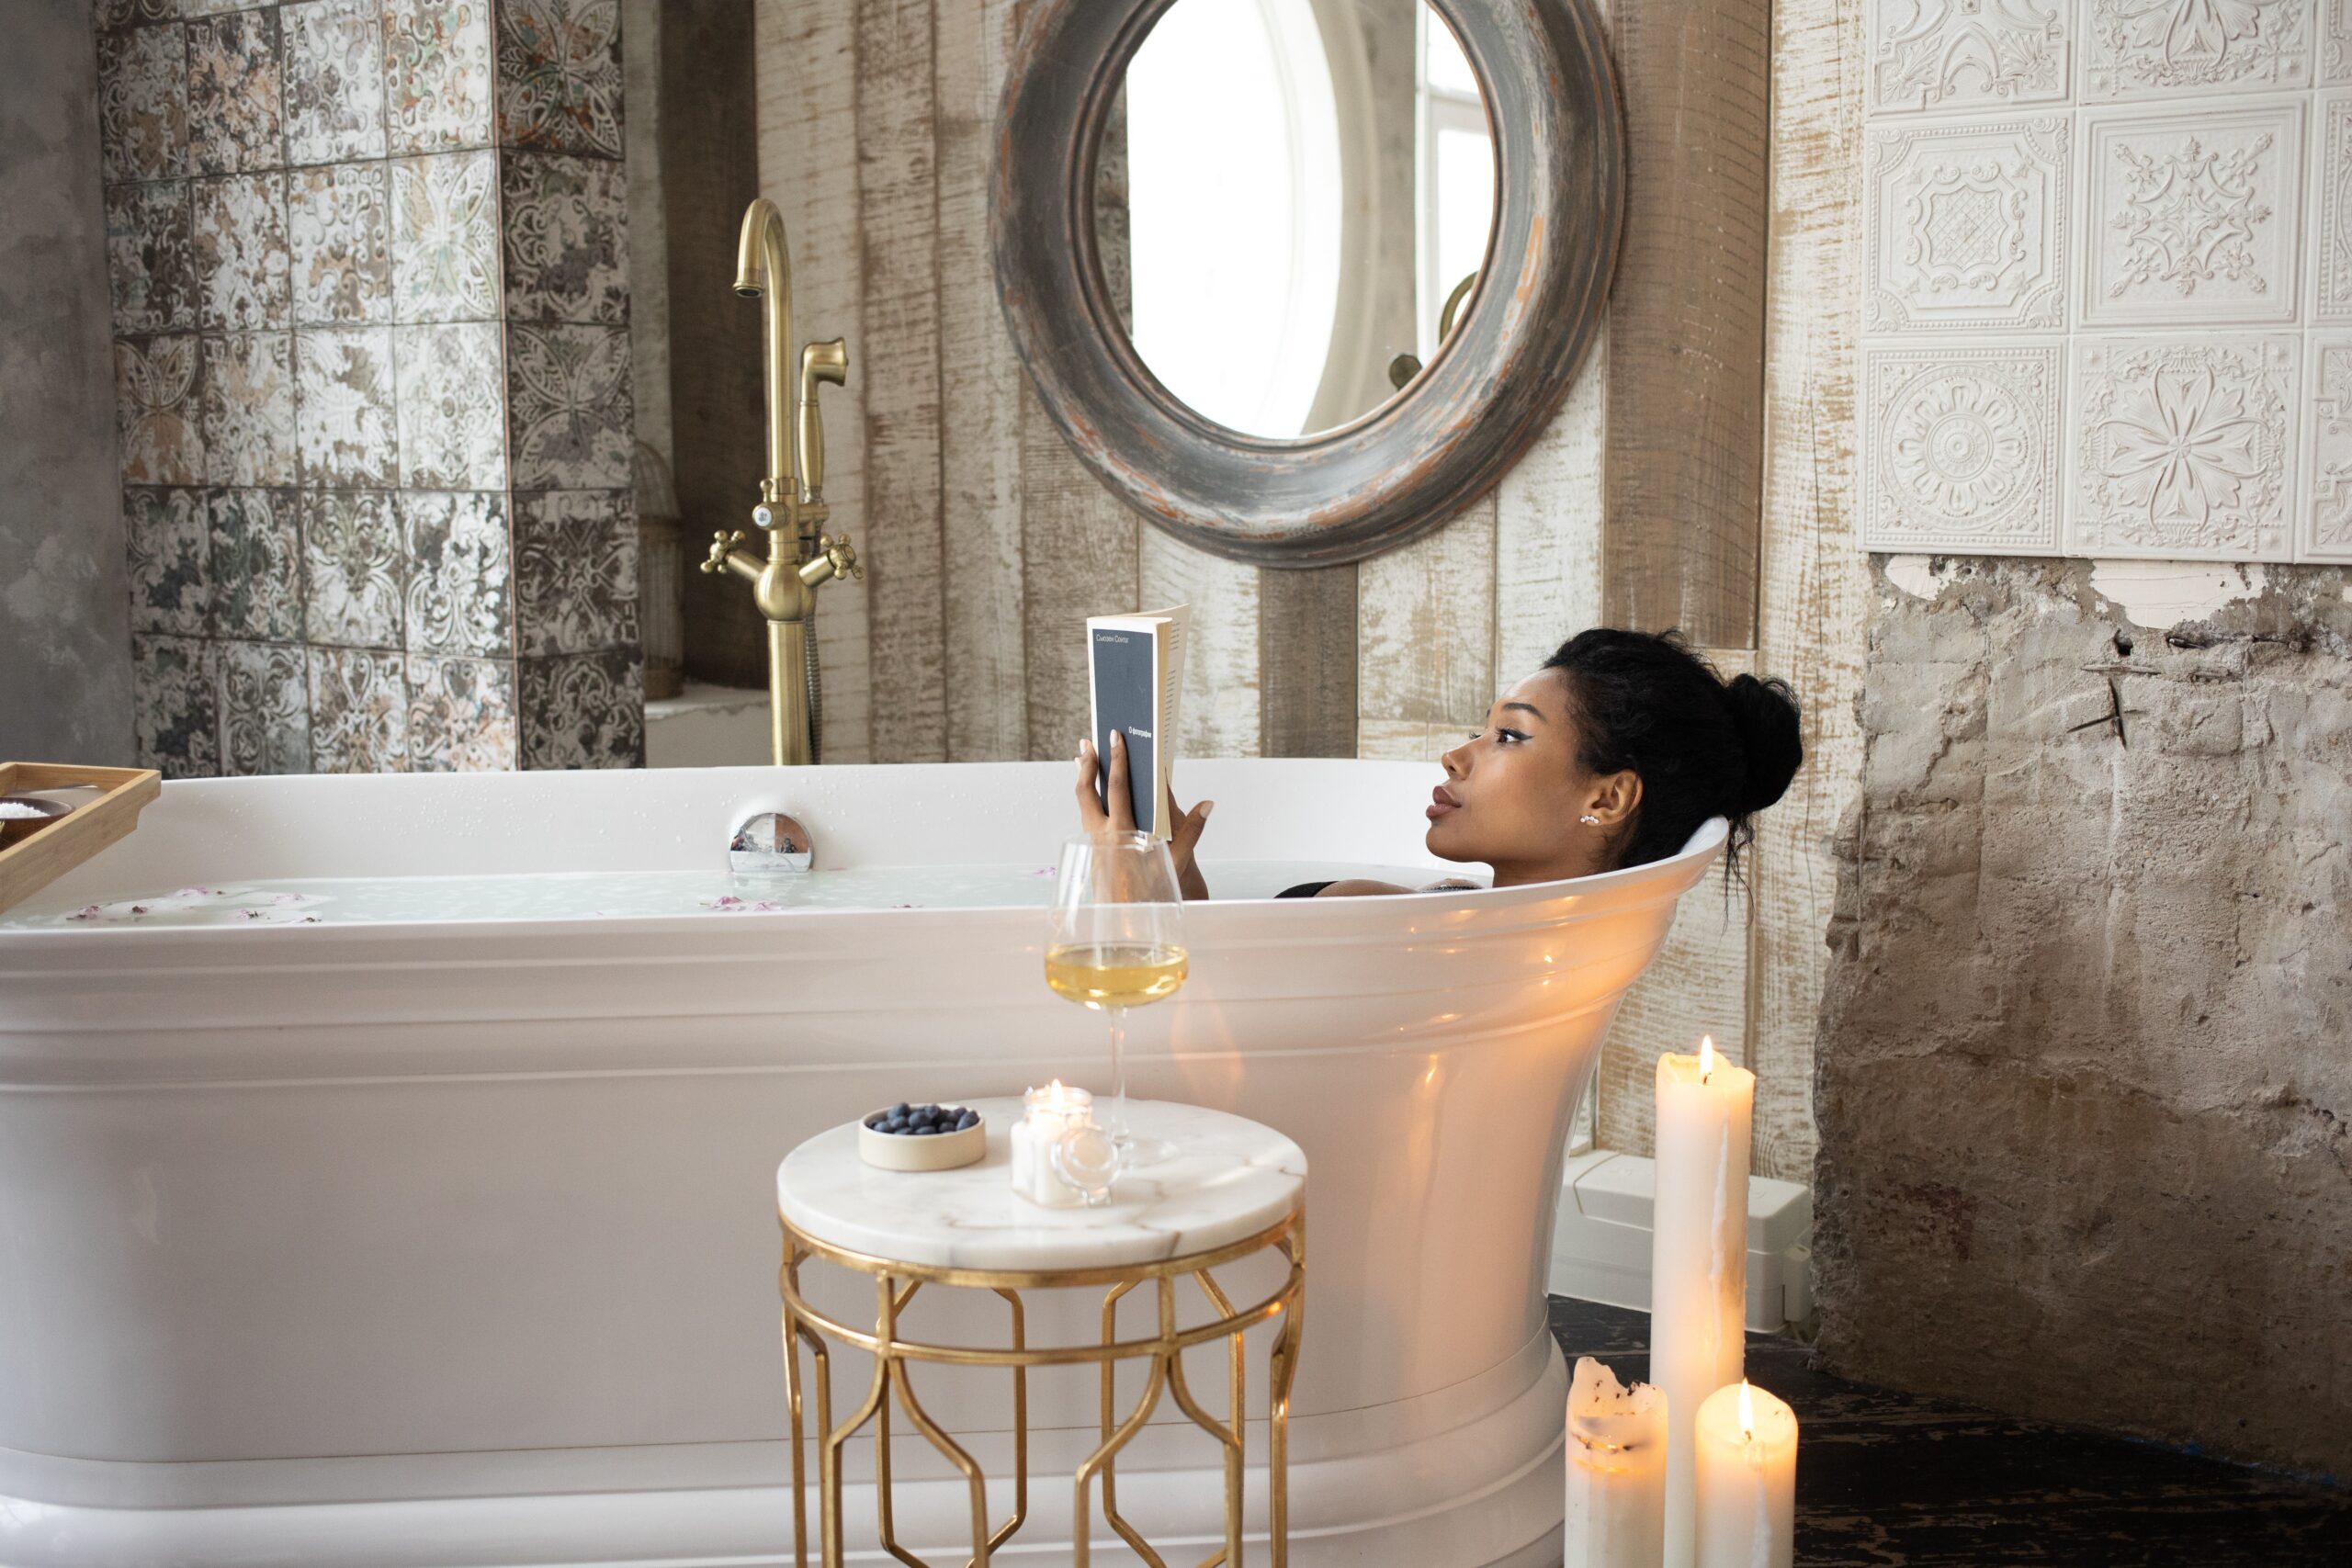 woman in bathtub relaxing